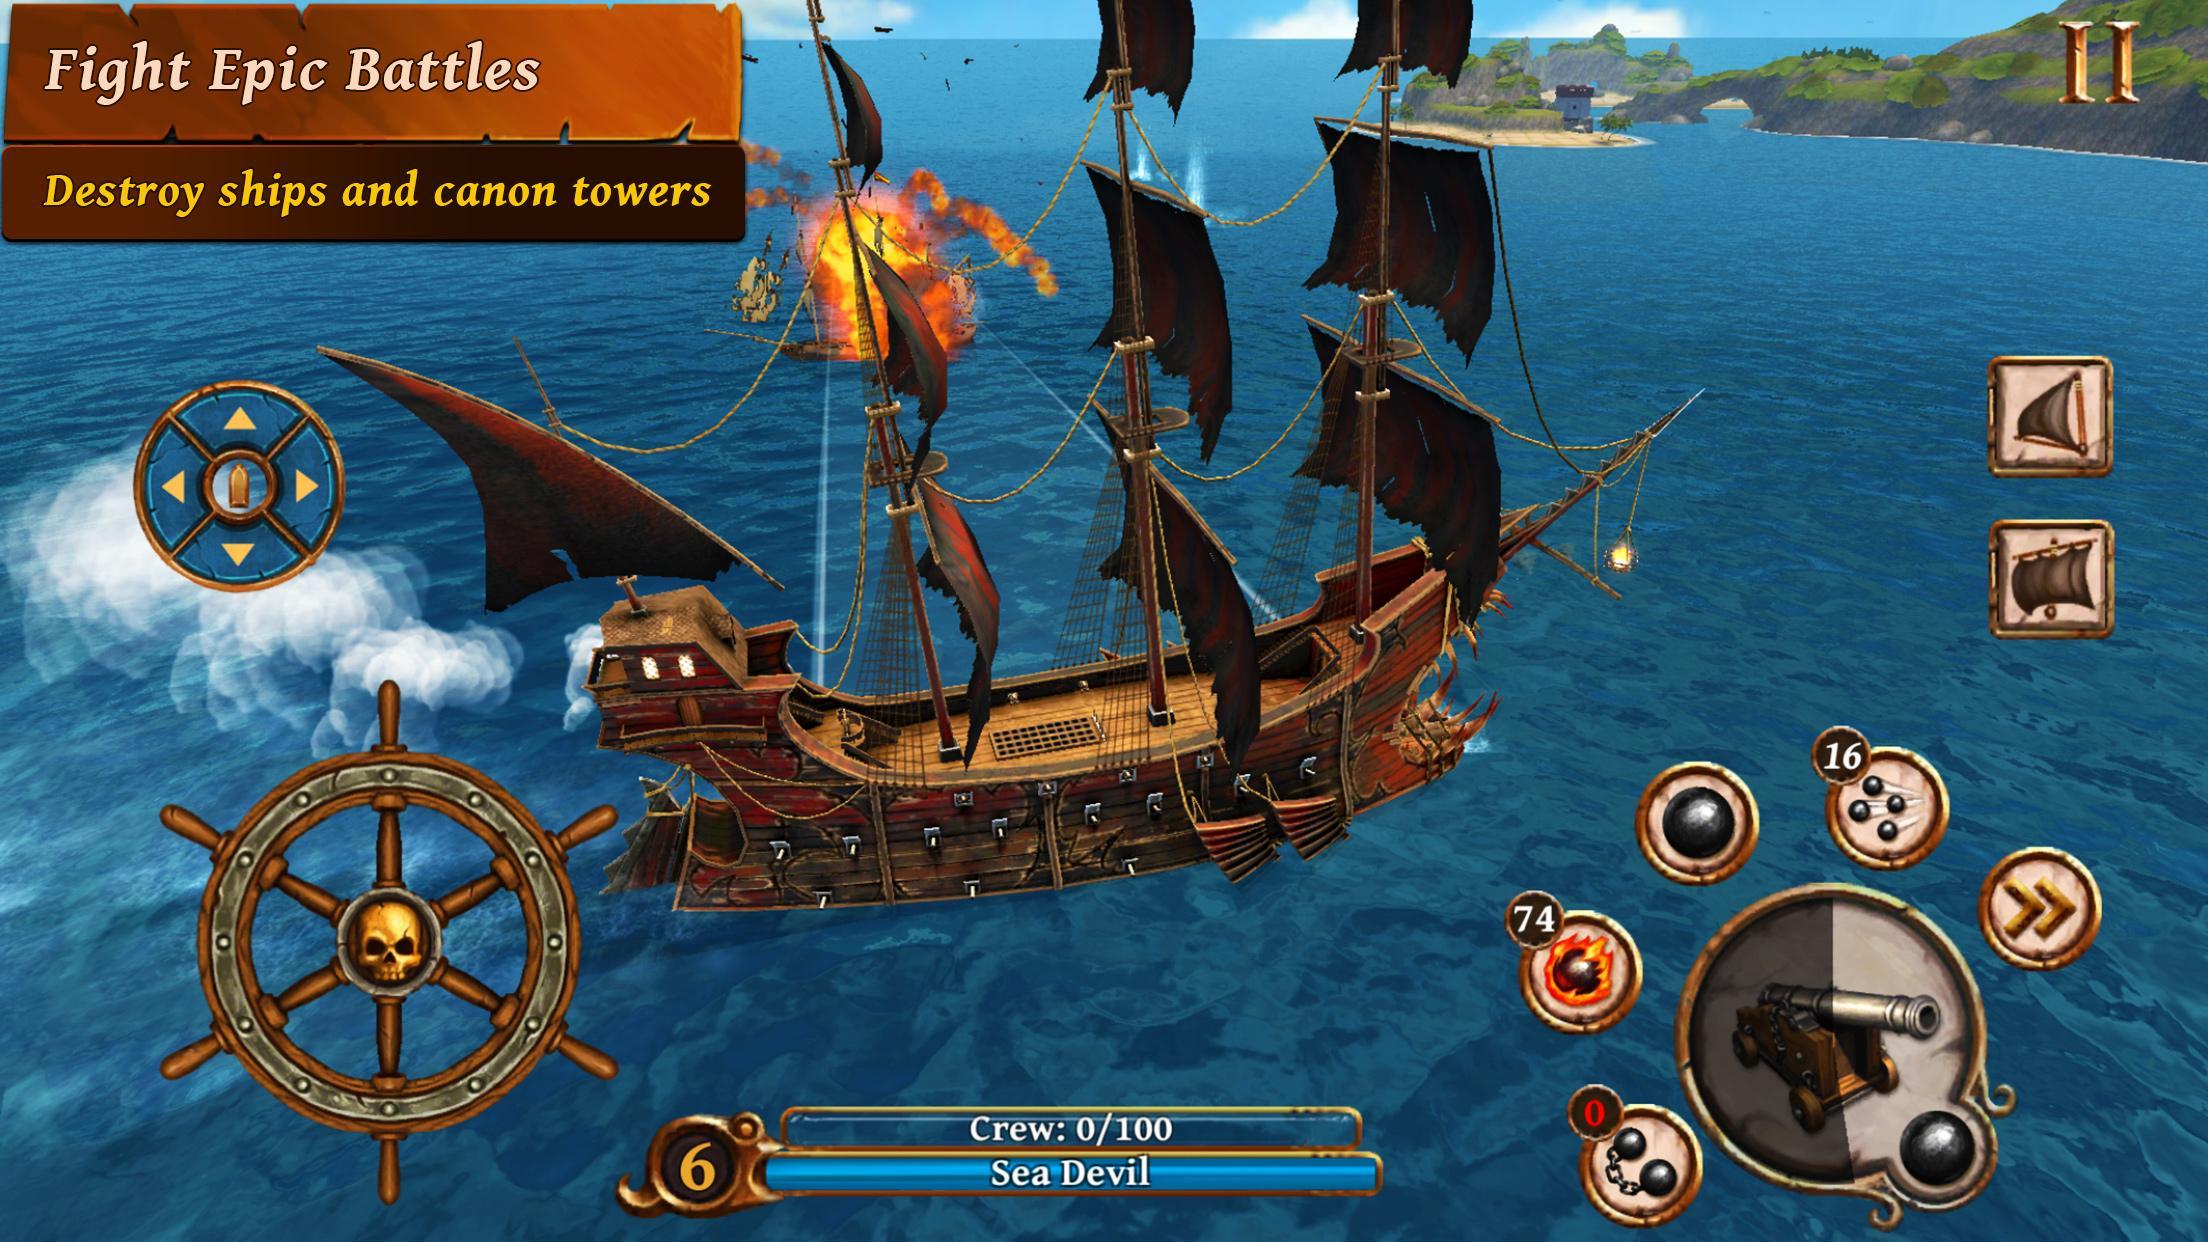 Игра плавать на корабле. Pirate ship Battles игра. Игра корабли битвы эпохи пиратов. Ships of Battle - age of Pirates - Warship Battle 2. Корабли битвы - эпоха пиратов - пират корабль.